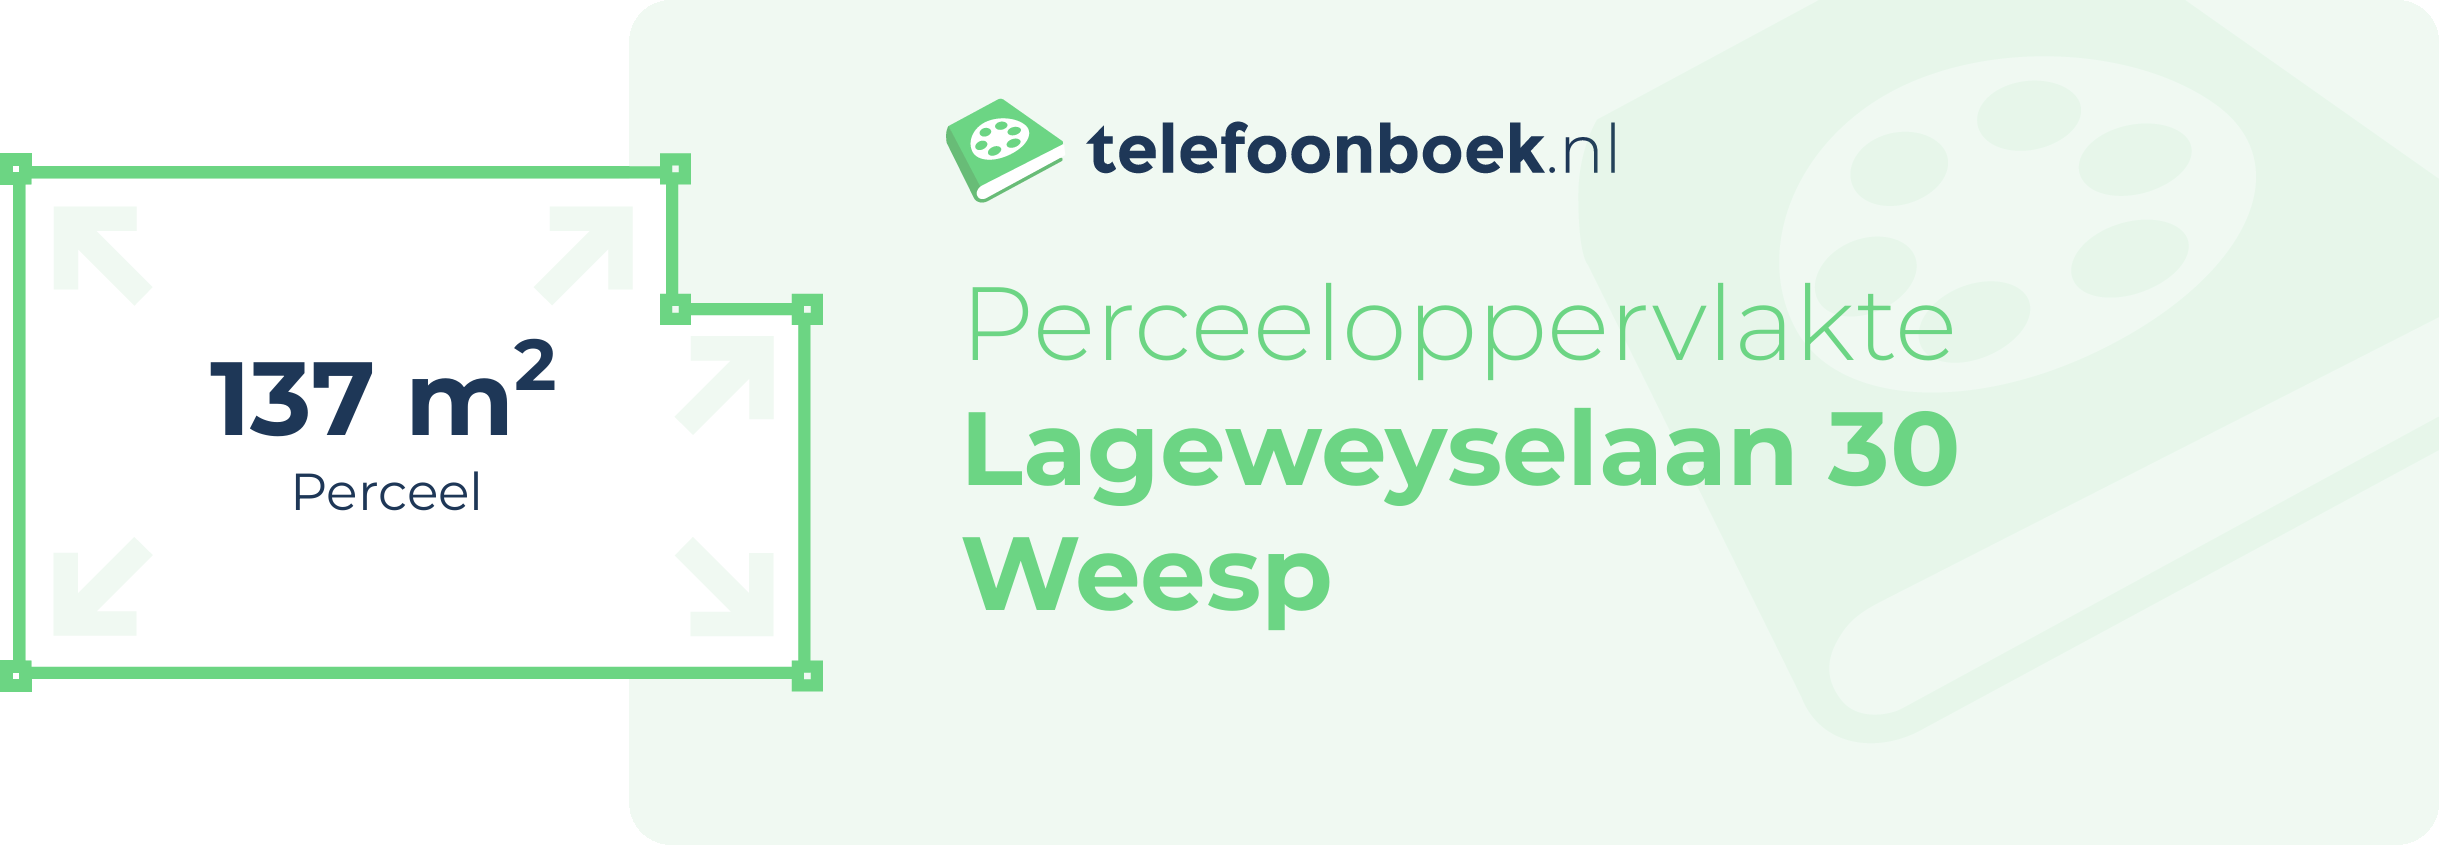 Perceeloppervlakte Lageweyselaan 30 Weesp